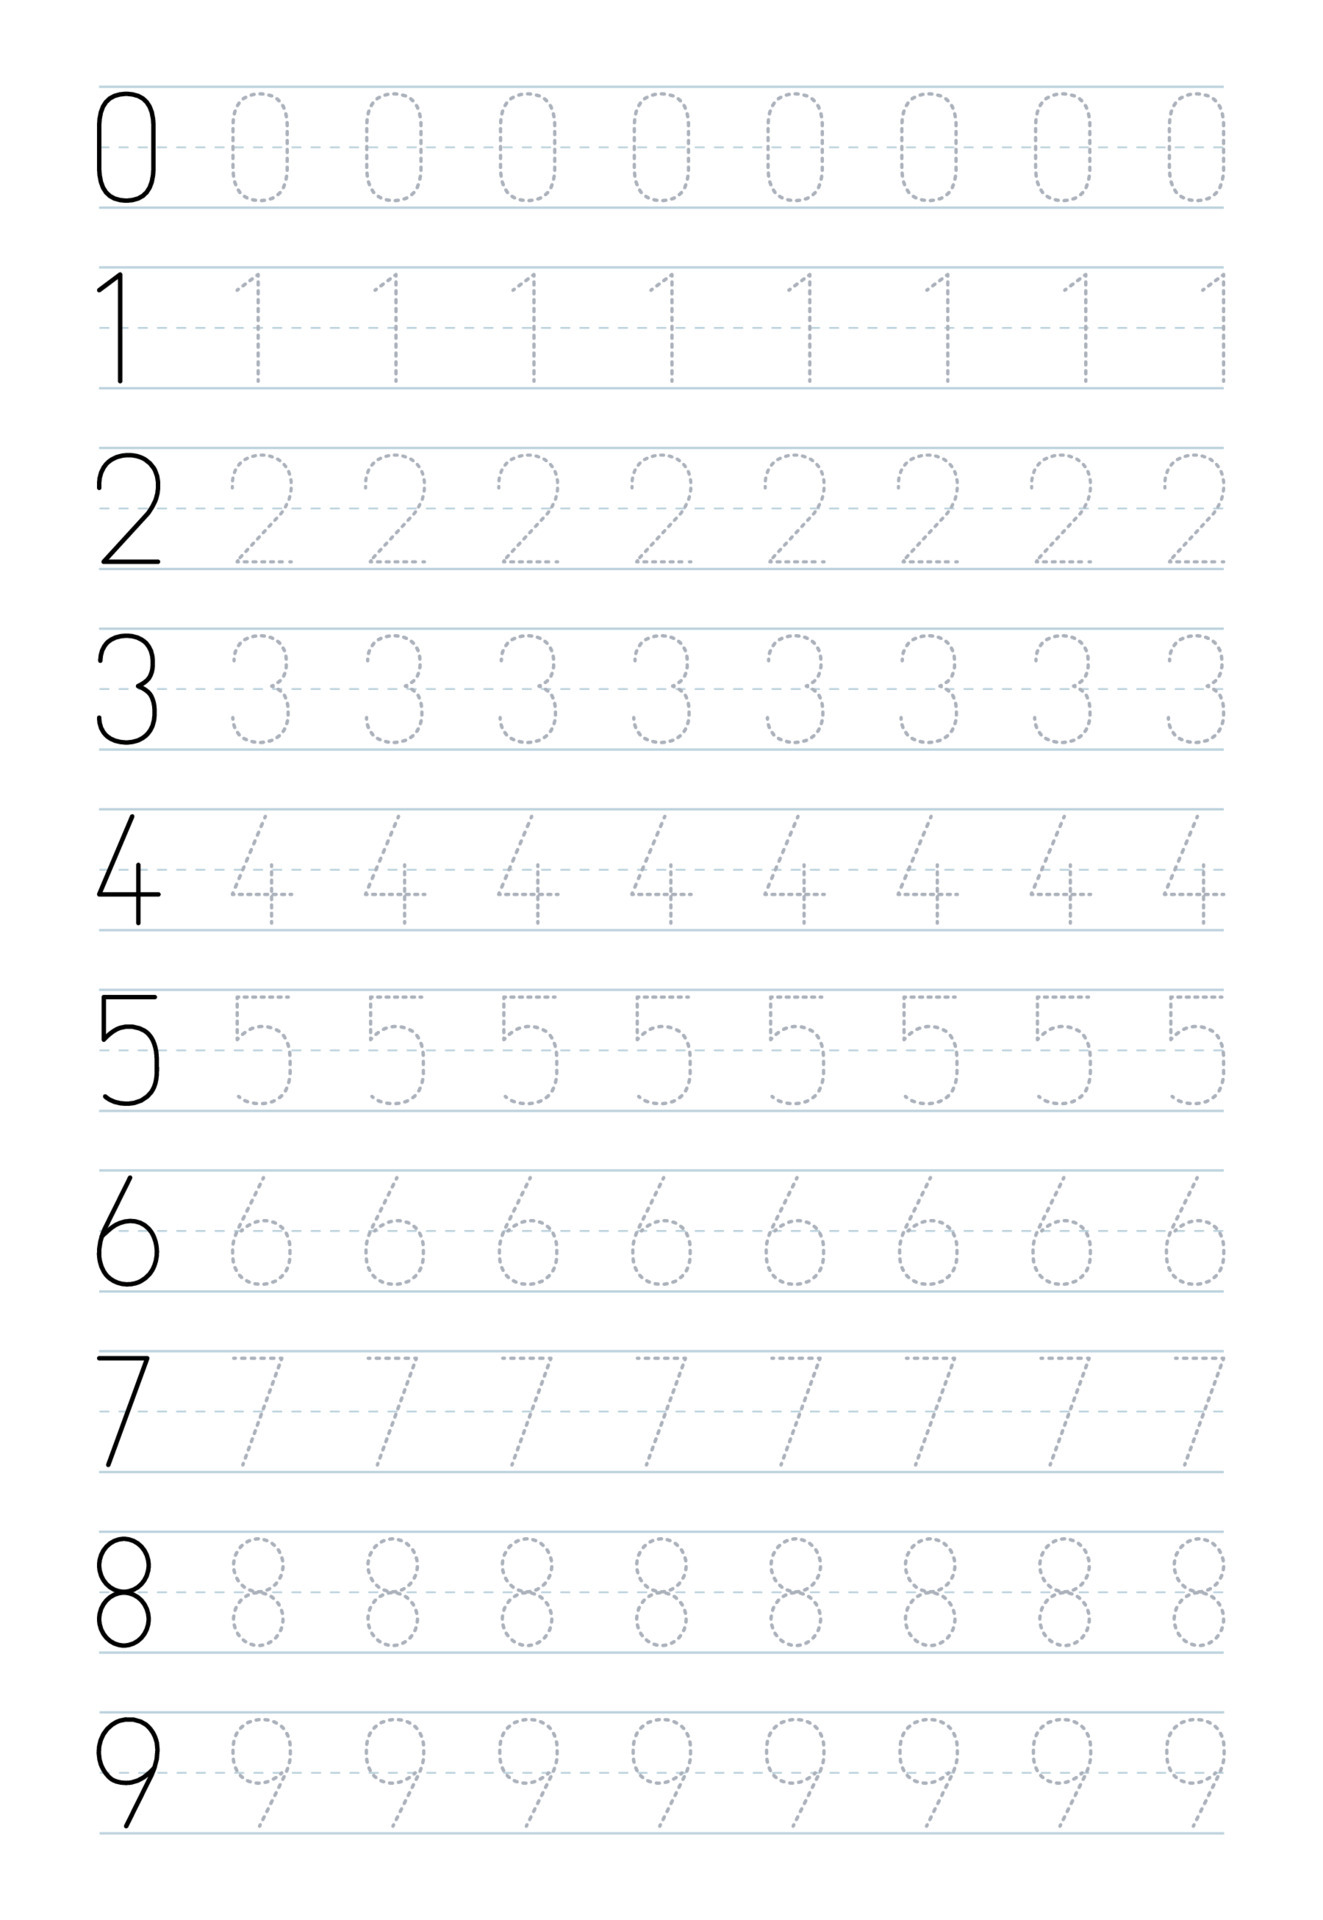 number-tracing-worksheets-for-preschool-5217155-vector-art-at-vecteezy